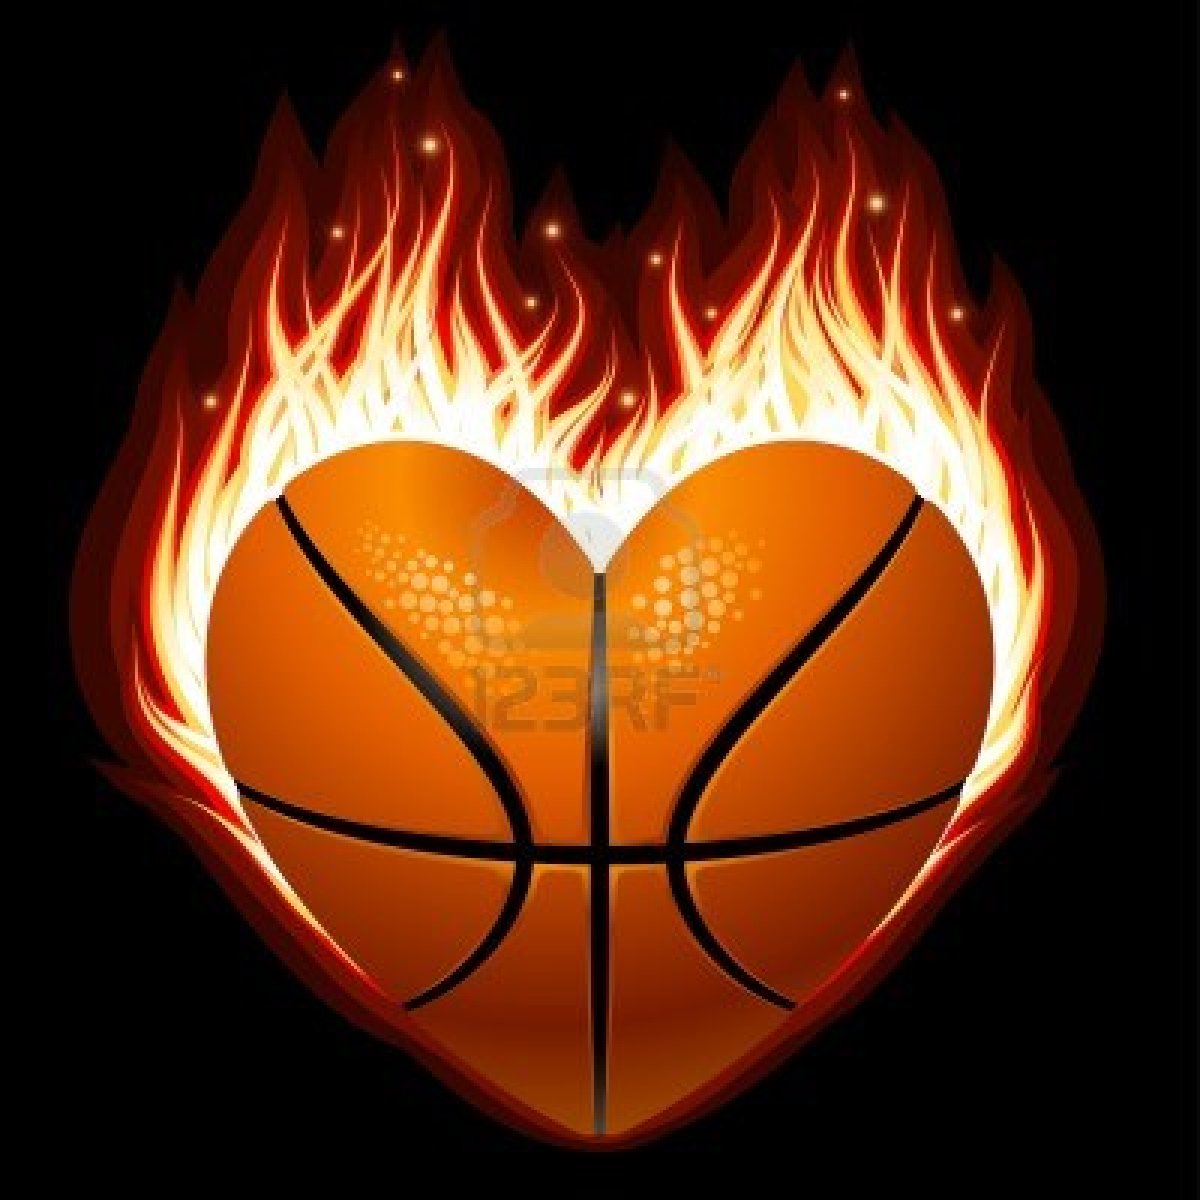 http://amigeleken.hu/upload/11172806_basketball_on_fire_in_the_shape_of_heart_1.jpg